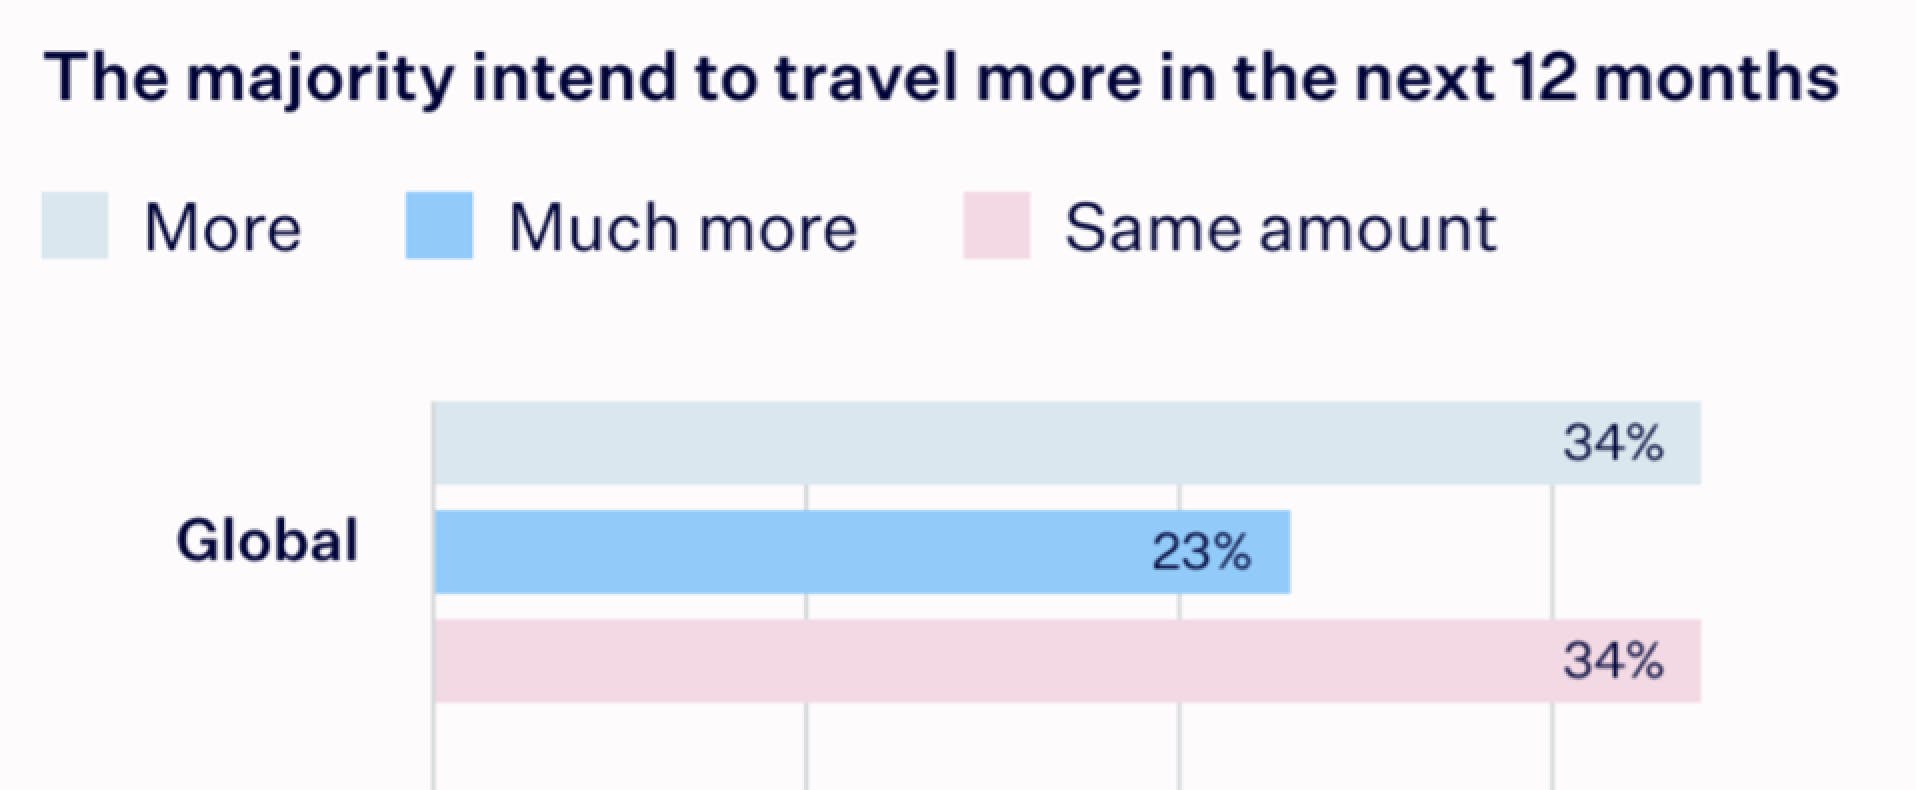 De meerderheid van de reizigers is van plan meer te gaan reizen de aankomende 12 maanden